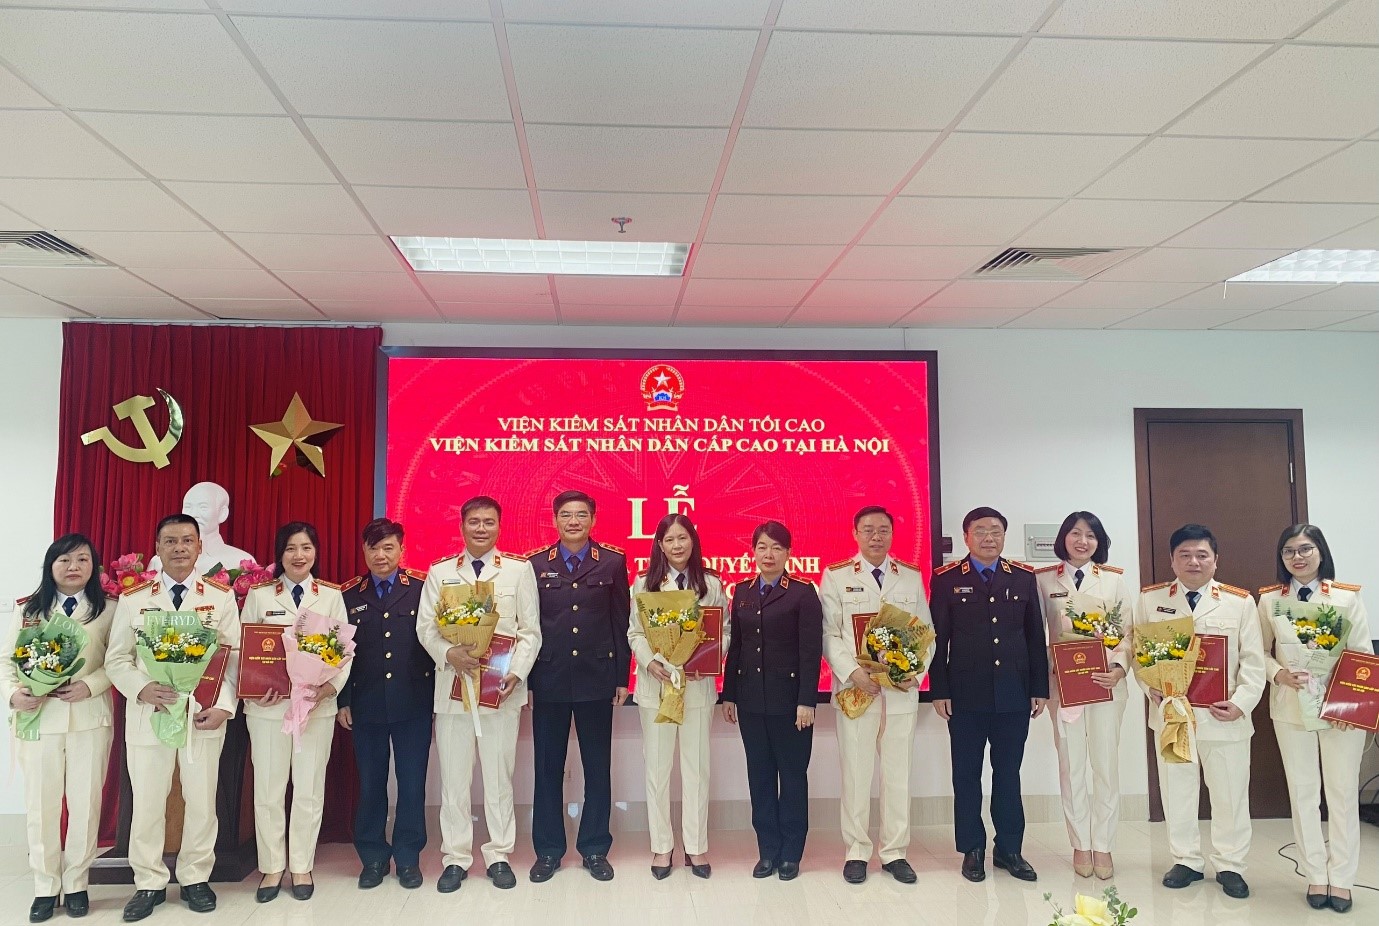 Viện kiểm sát nhân dân cấp cao tại Hà Nội tổ chức Lễ công bố và trao các quyết định về công tác tổ chức cán bộ